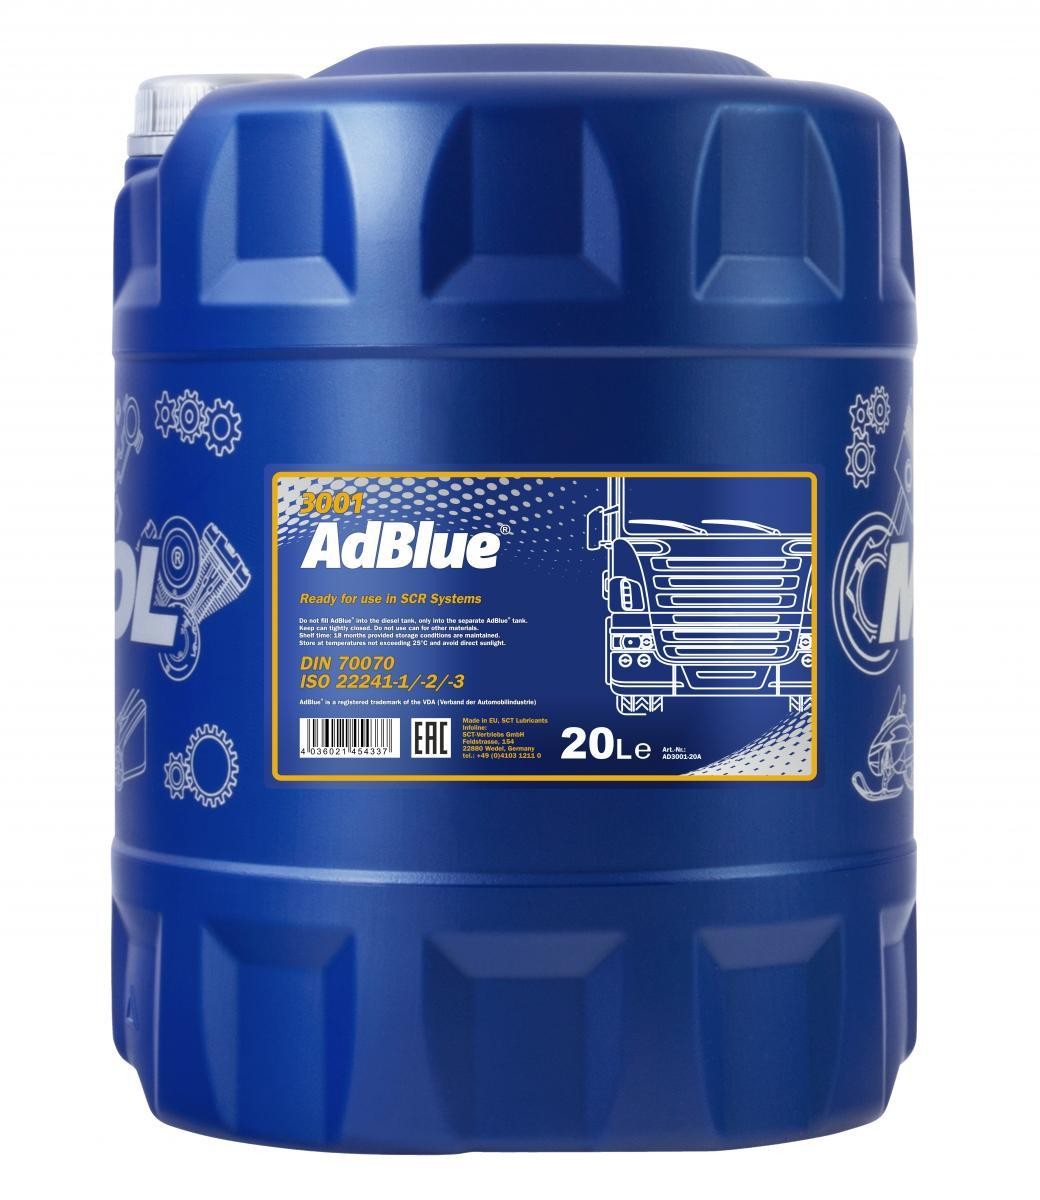 Compra Adblue online para coche diesel en envase de 20/L